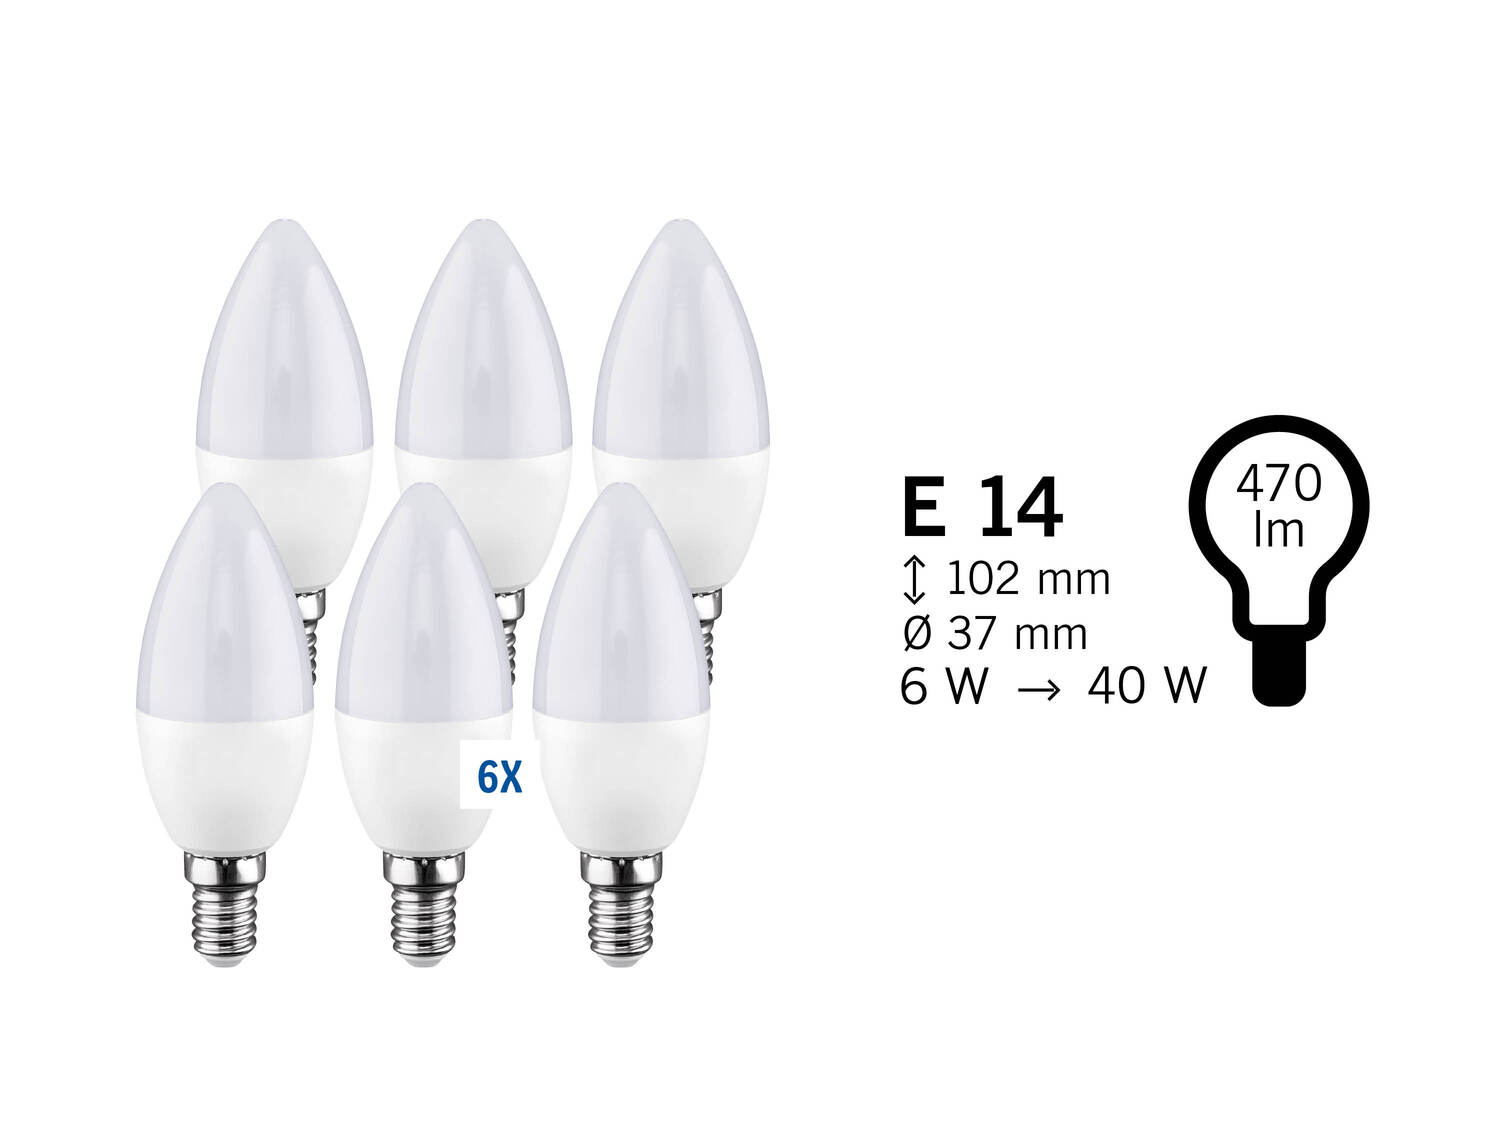 Zestaw  6 żarówek LED* Livarno, cena 4,99 PLN  
-  3 zestawy do wboru
Opis

- TUV-GS